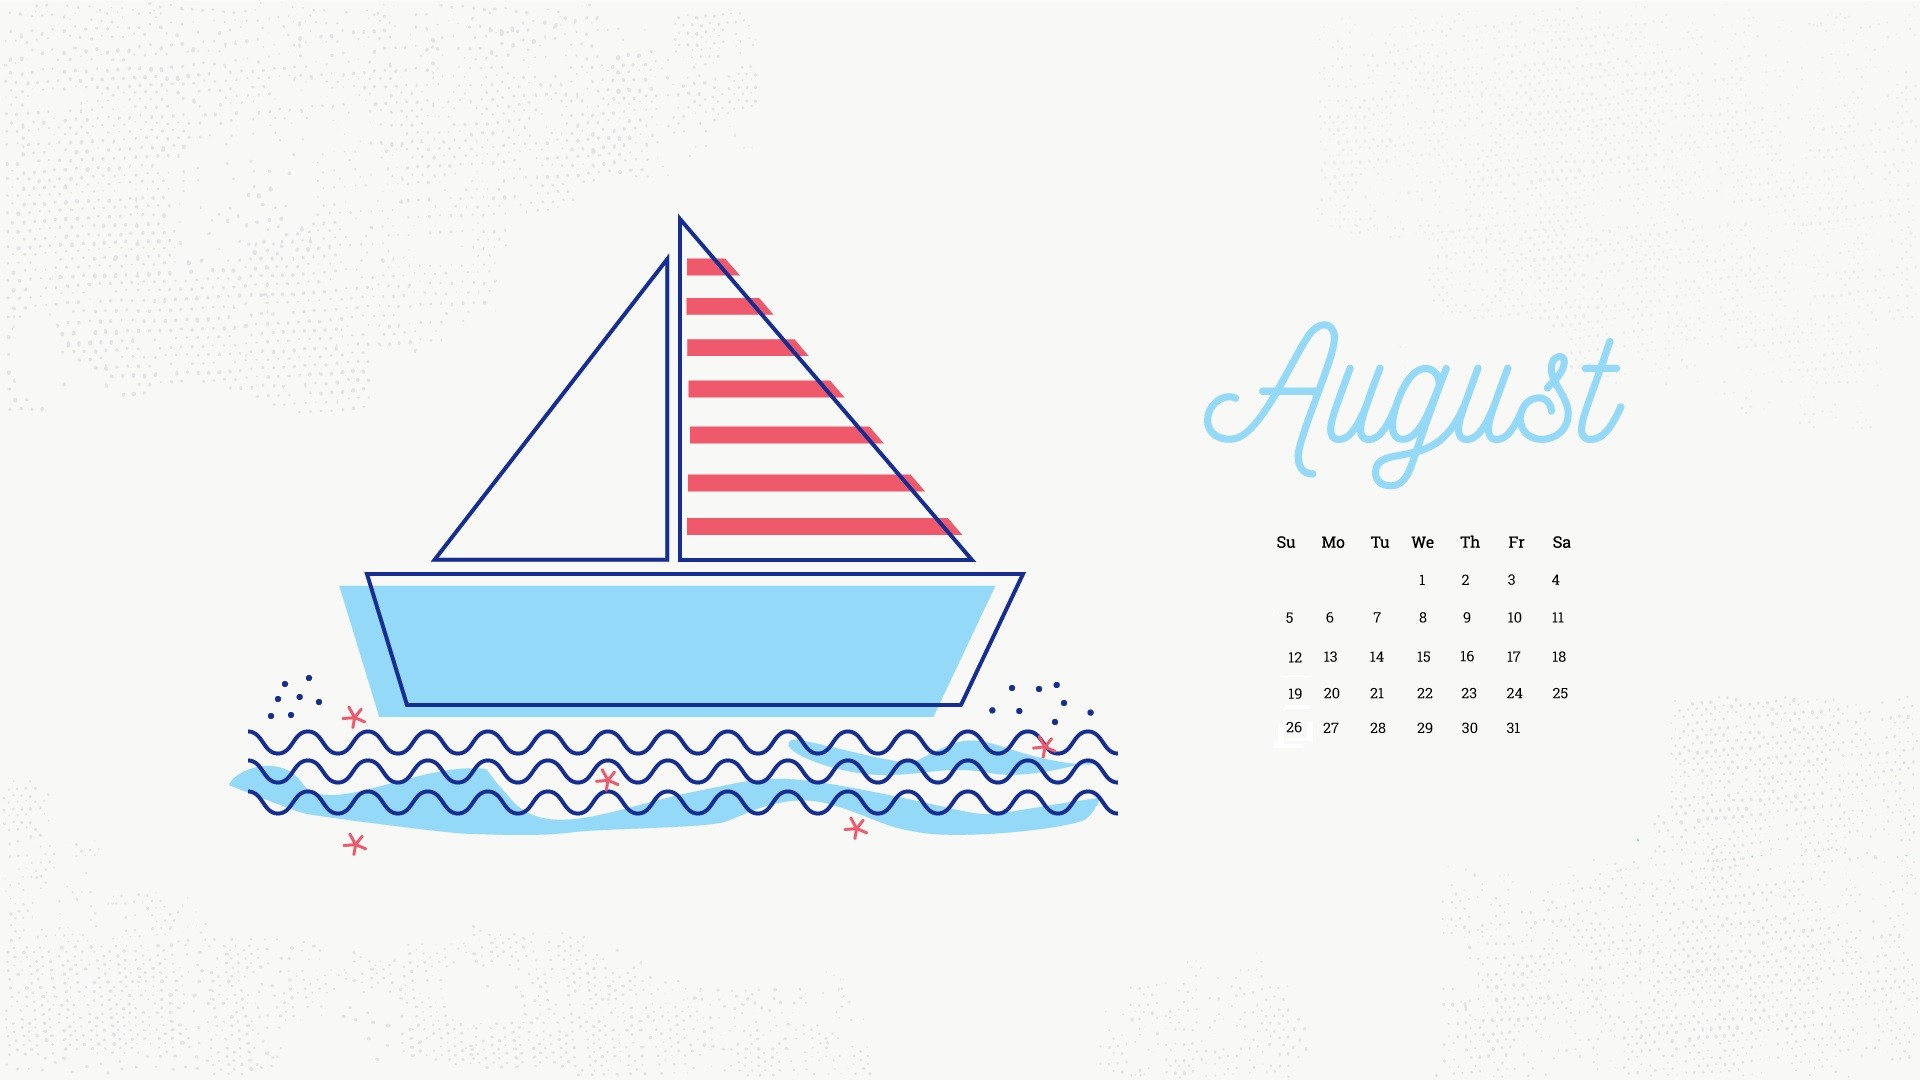 1920x1080 August 2018 Calendar Wallpapers August 2018 Desktop Calendar Wallpapers